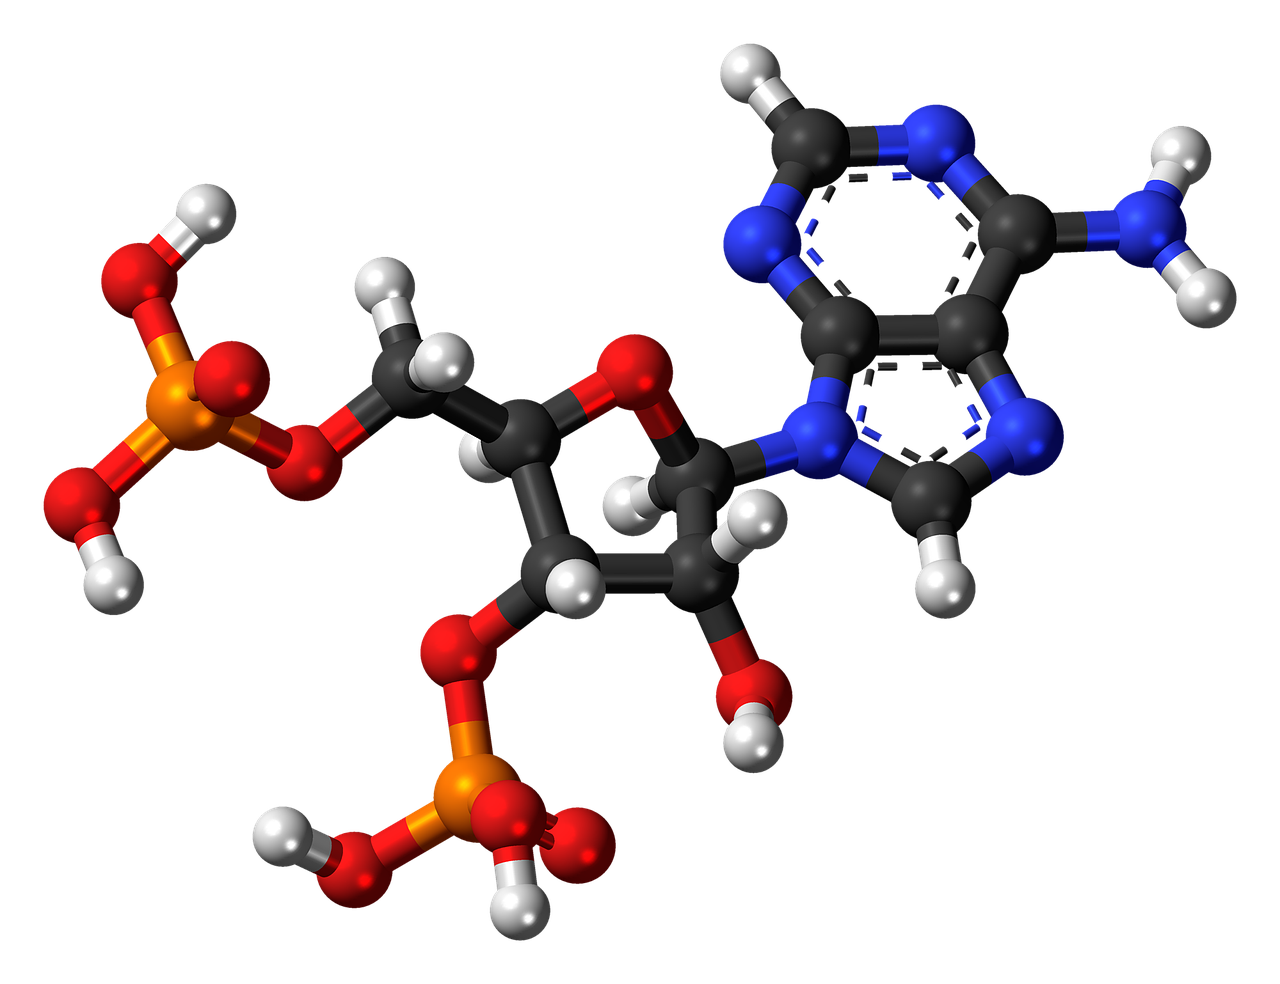 adenosine biphosphate nucleotide molecule free photo